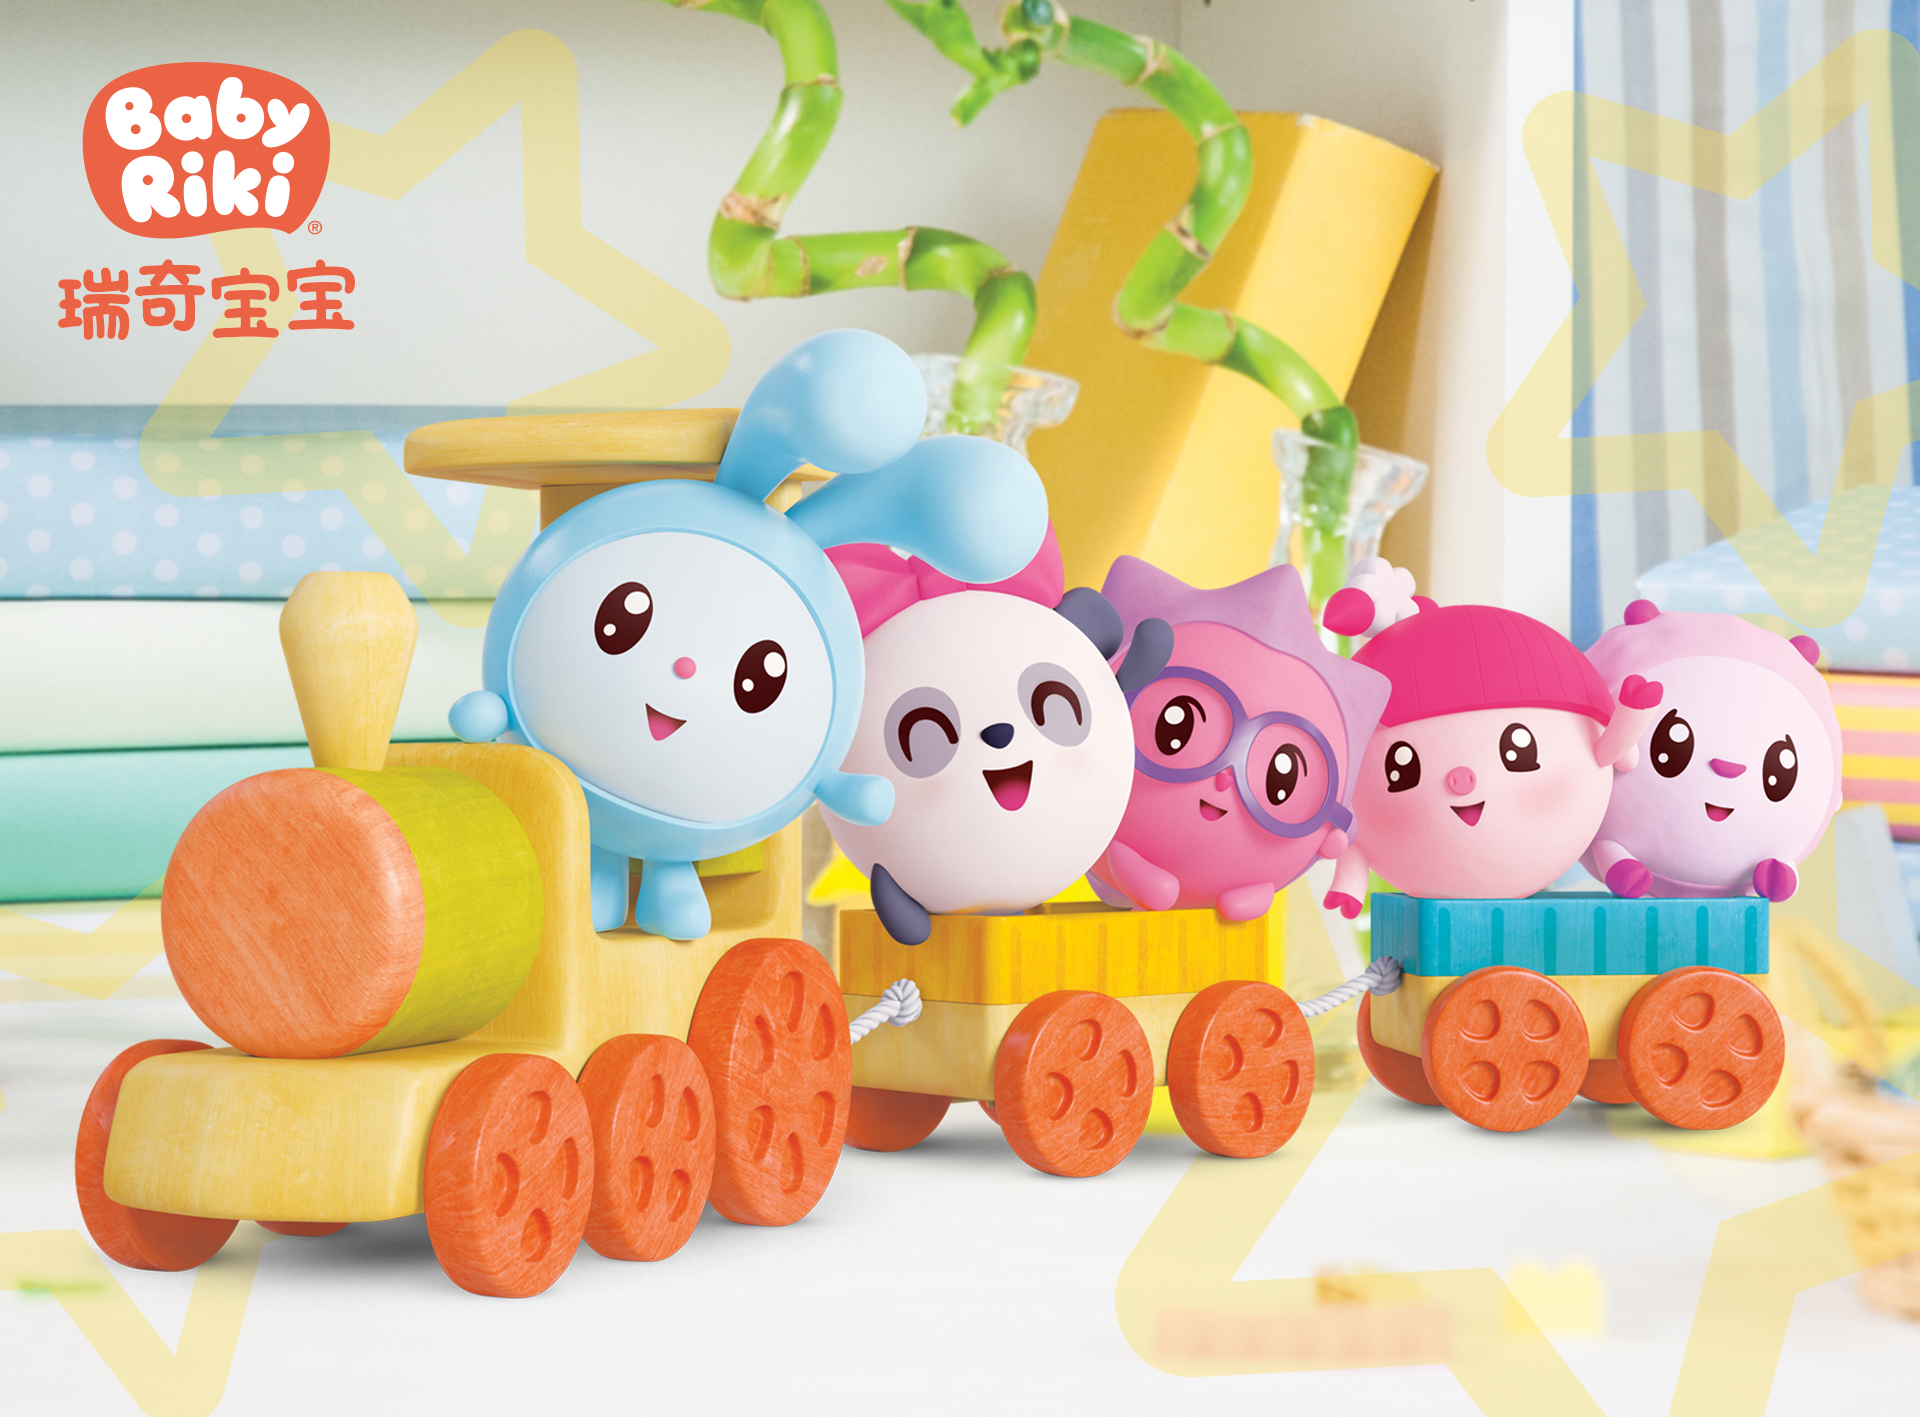 瑞奇宝宝主题玩具获选2019年香港制造玩具大赏优异奖top 5